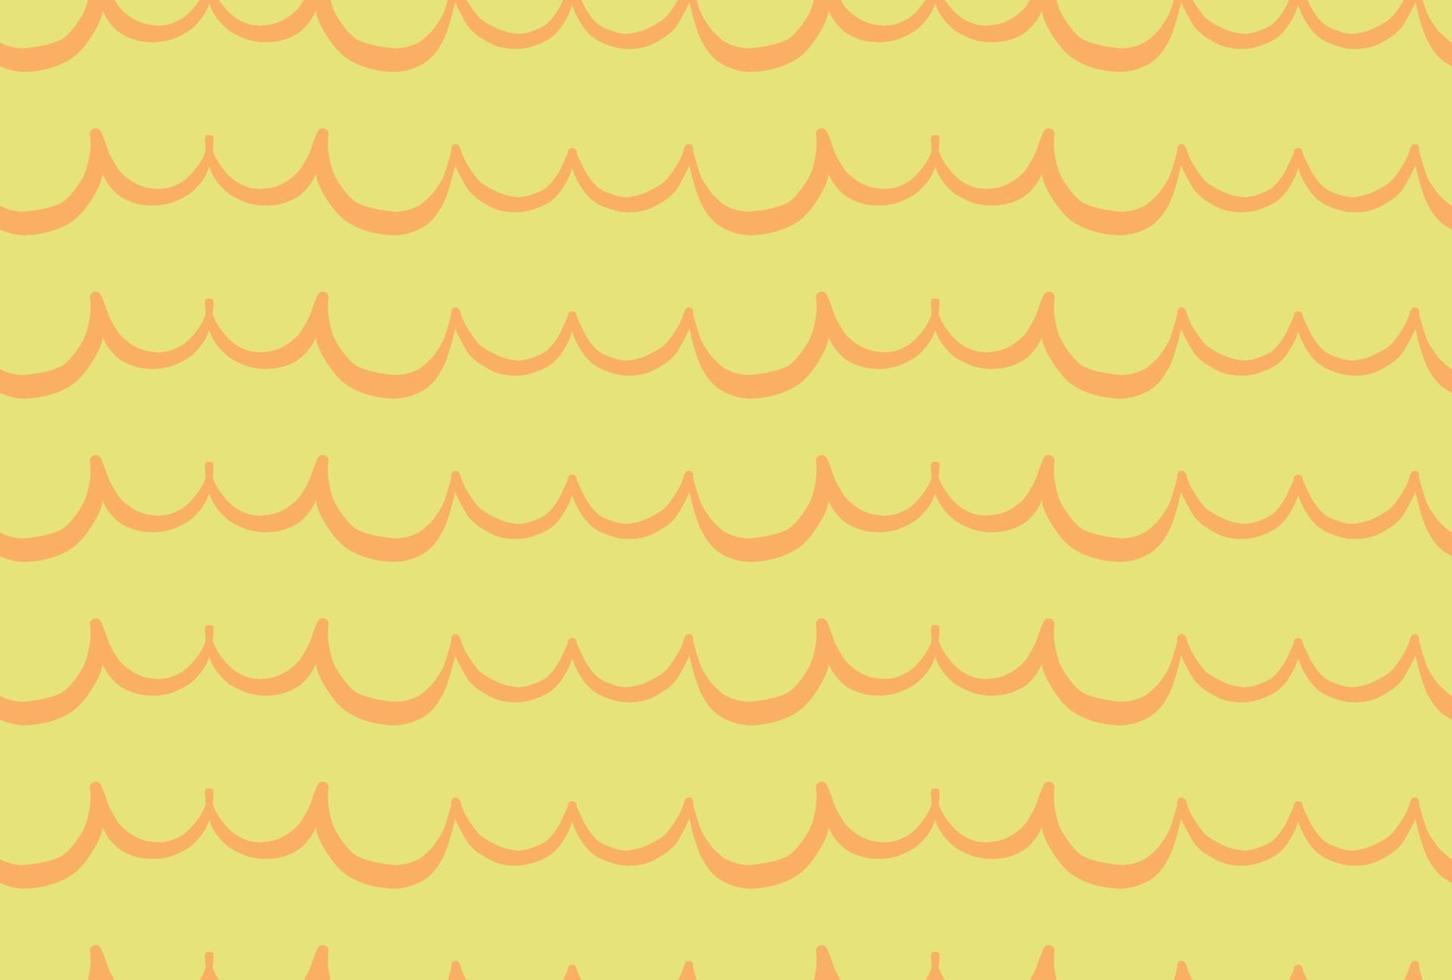 Vektor Textur Hintergrund, nahtloses Muster. handgezeichnete, gelbe, orange Farben.